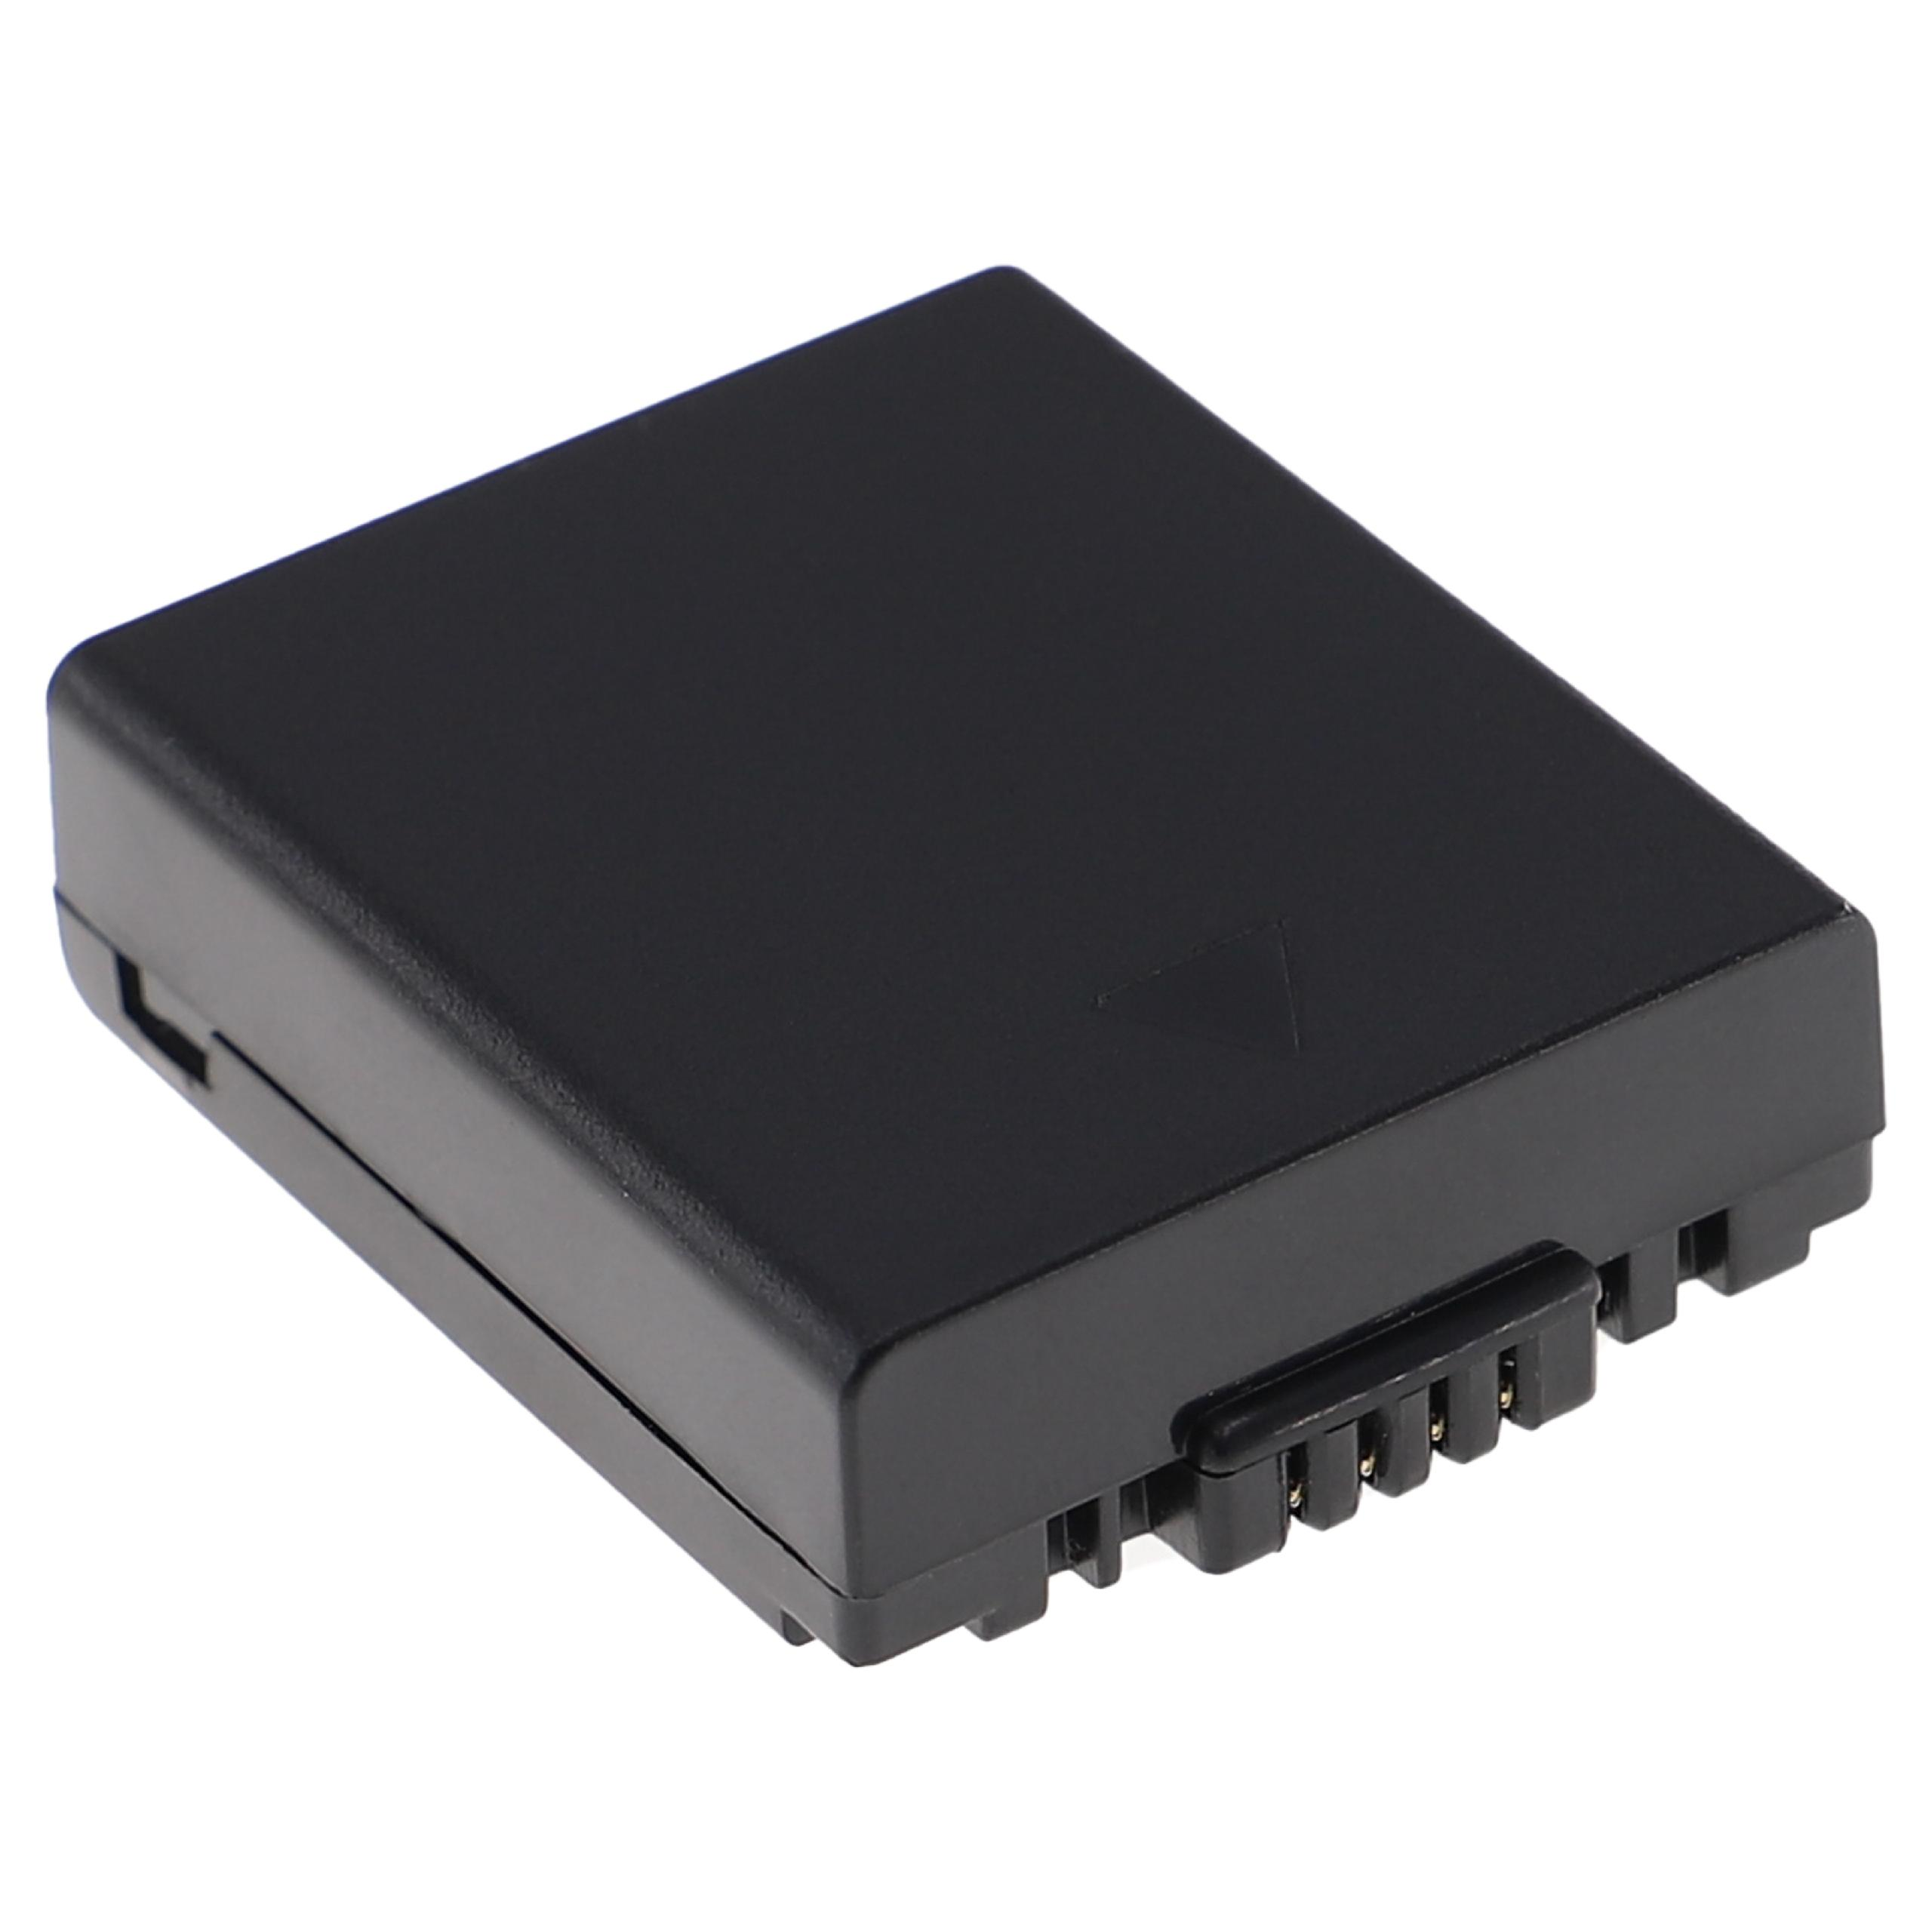 EXTENSILO kompatibel mit Panasonic Lumix Volt, 7.4 DMC-FZ20, DMC-FZ4 700 Akku Kamera, DMC-FZ3, Li-Ion - DMC-FZ5